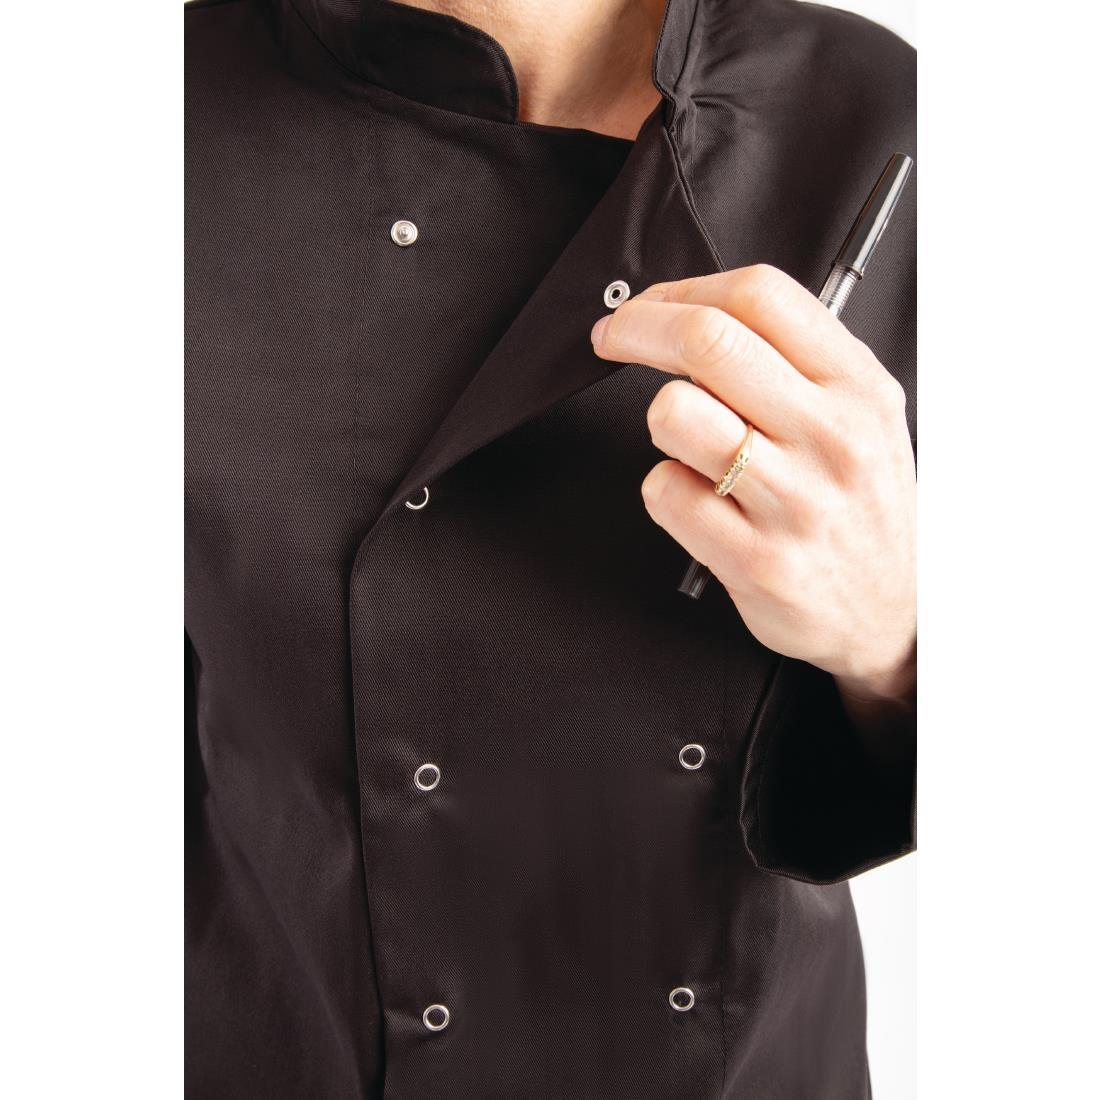 Whites Vegas Unisex Chefs Jacket Long Sleeve Black M - A438-M  - 8